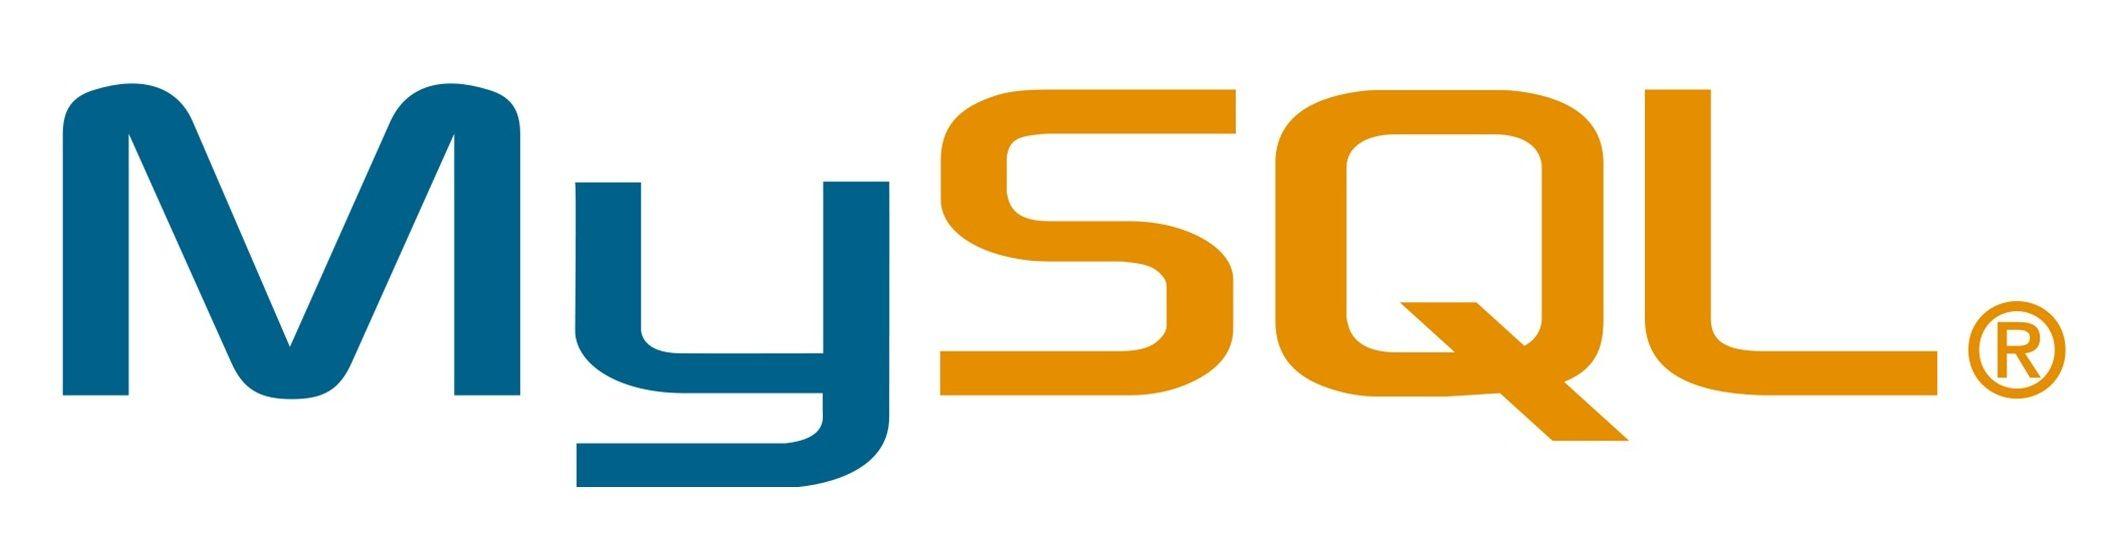 mysql workbench logo